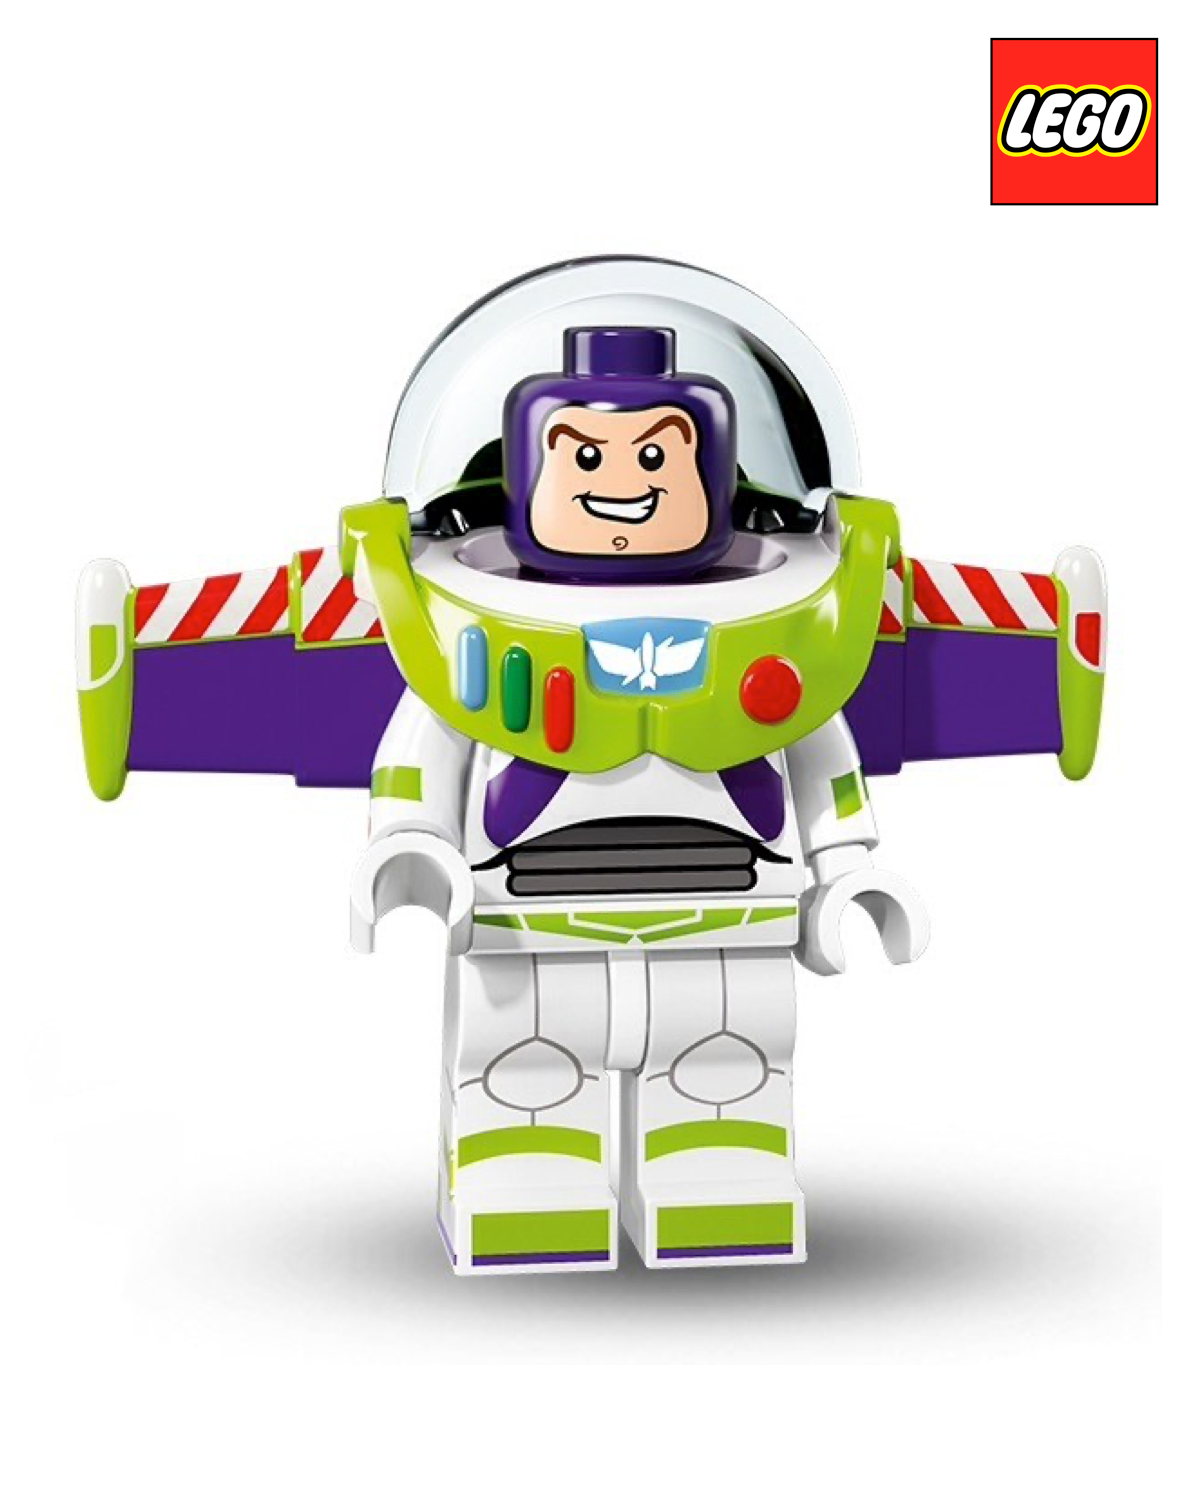 Buzz Lightyear - Disney - Series 1  | LEGO Minifigure | NEW CMF